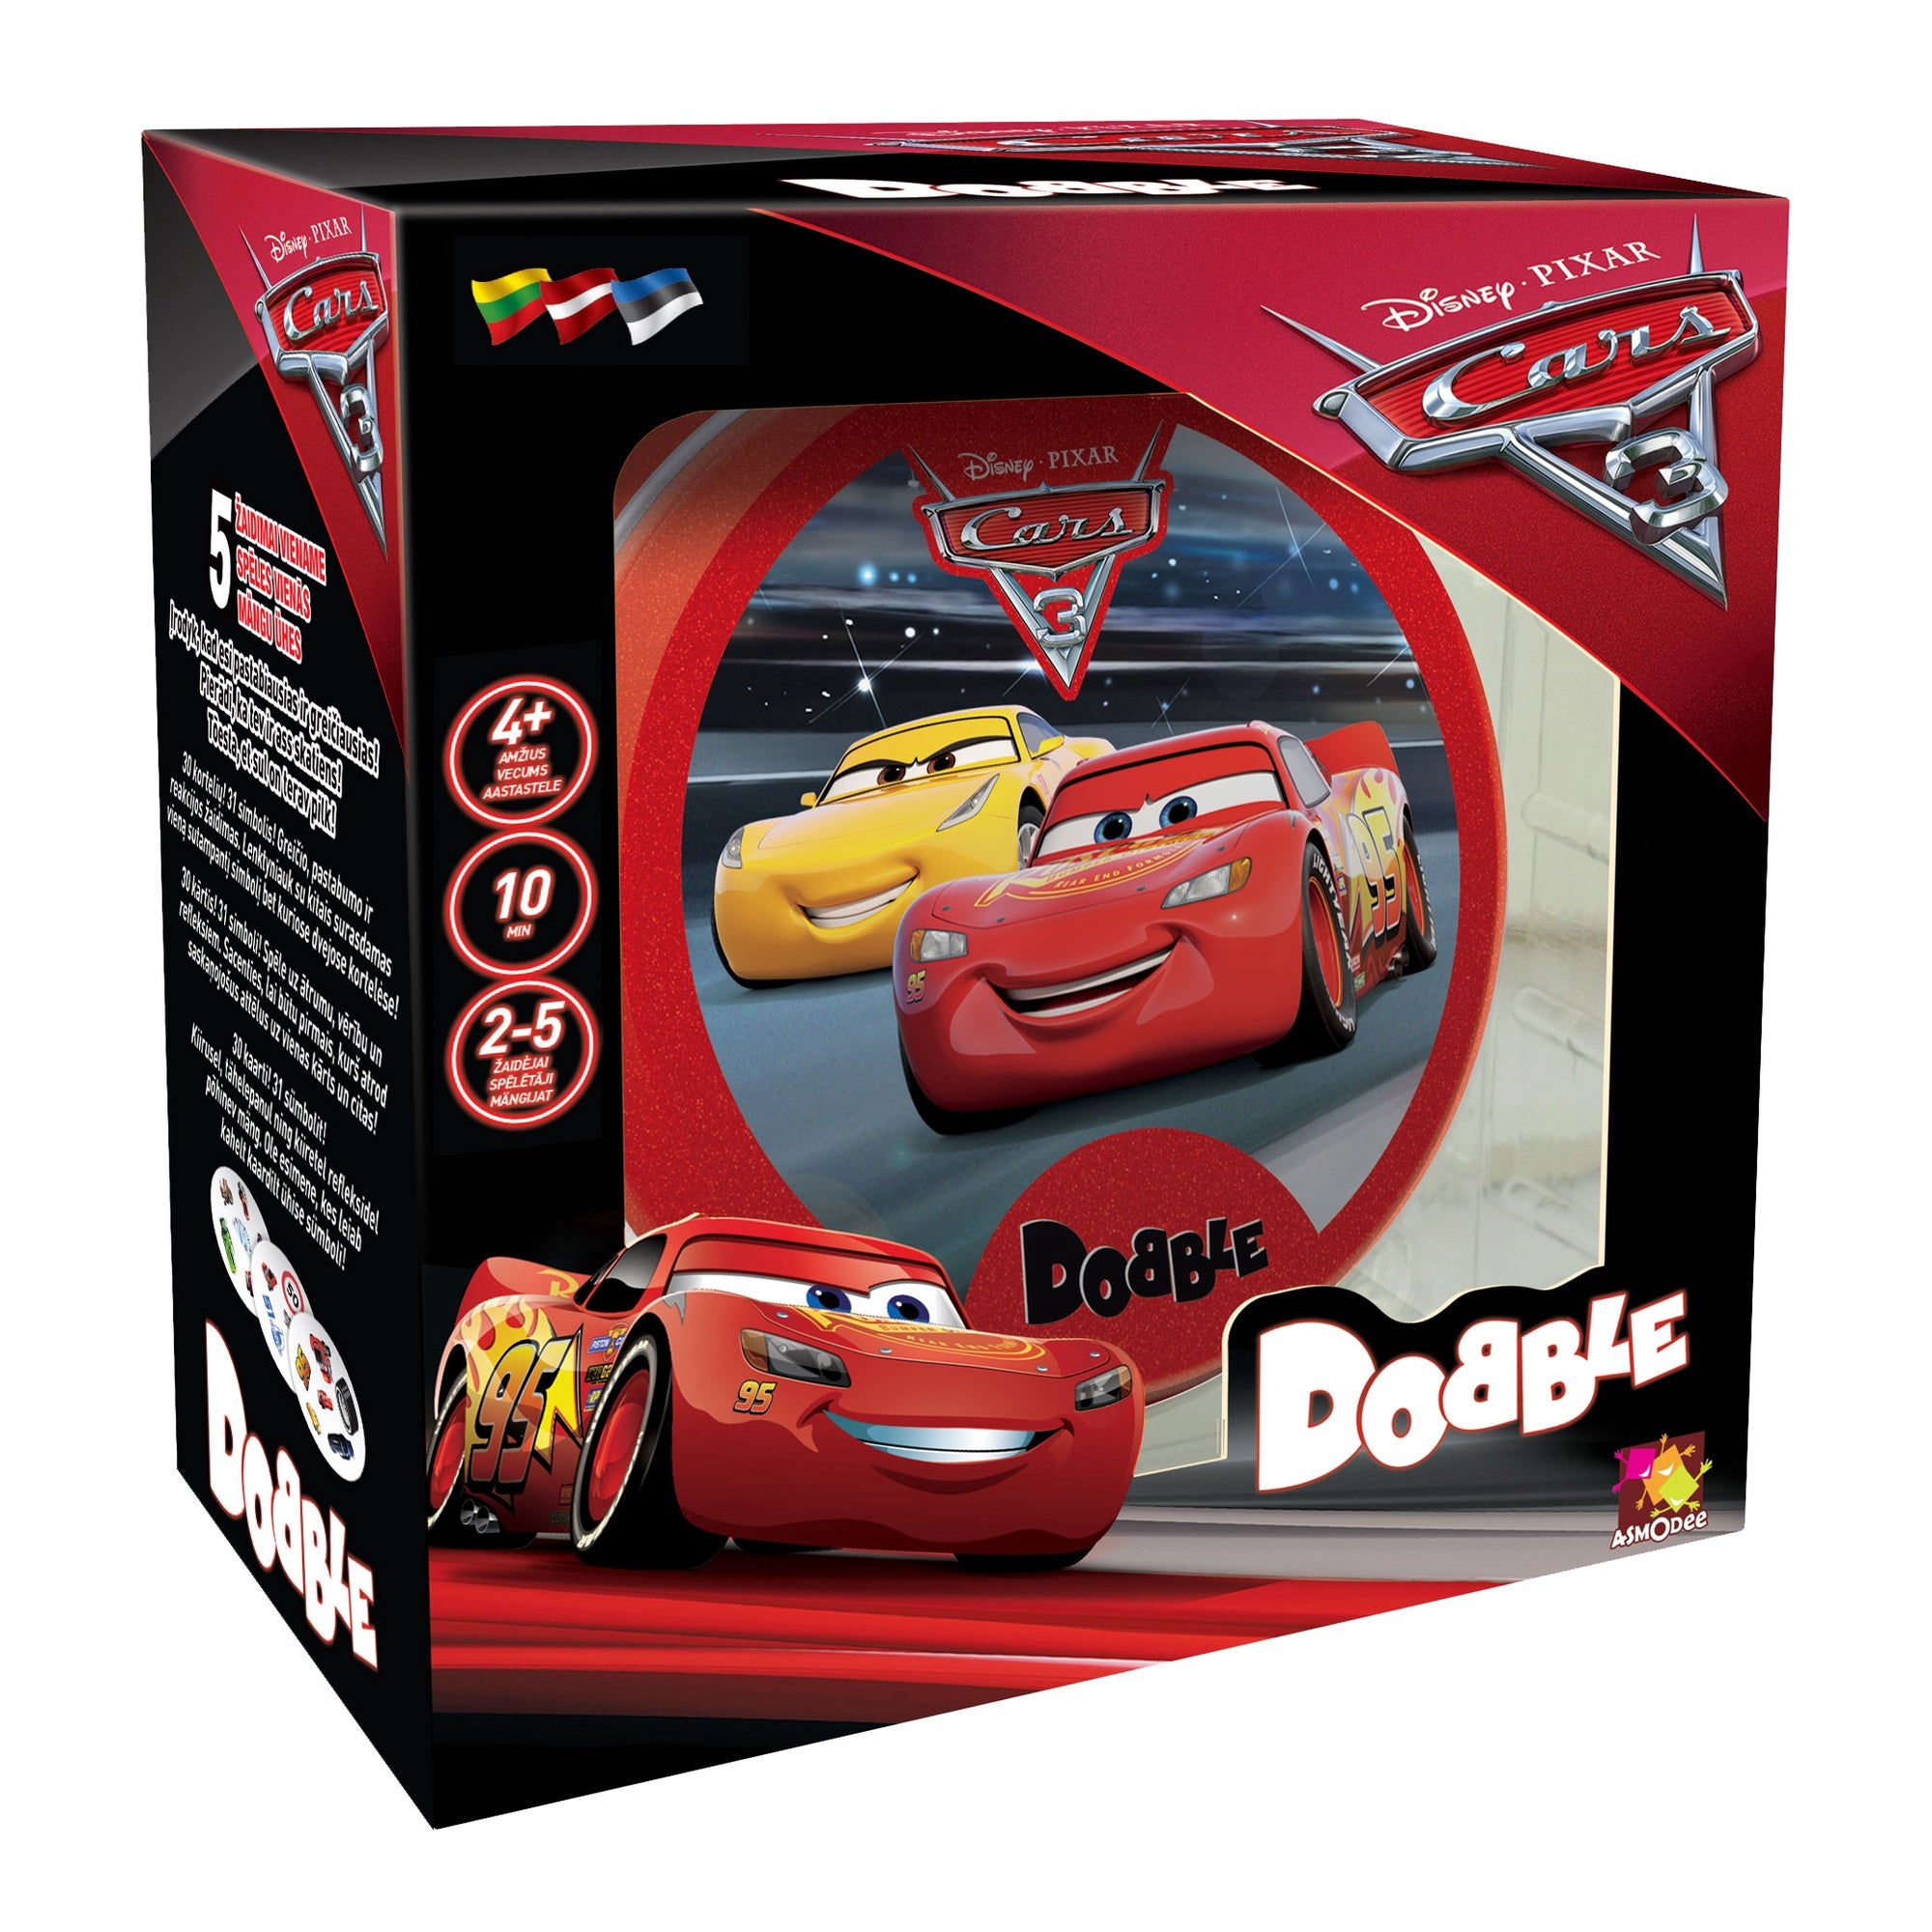 სამაგიდო თამაში დაბლ ქარს 3 (Dobble Cars 3 NL) სამაგიდო თამაში